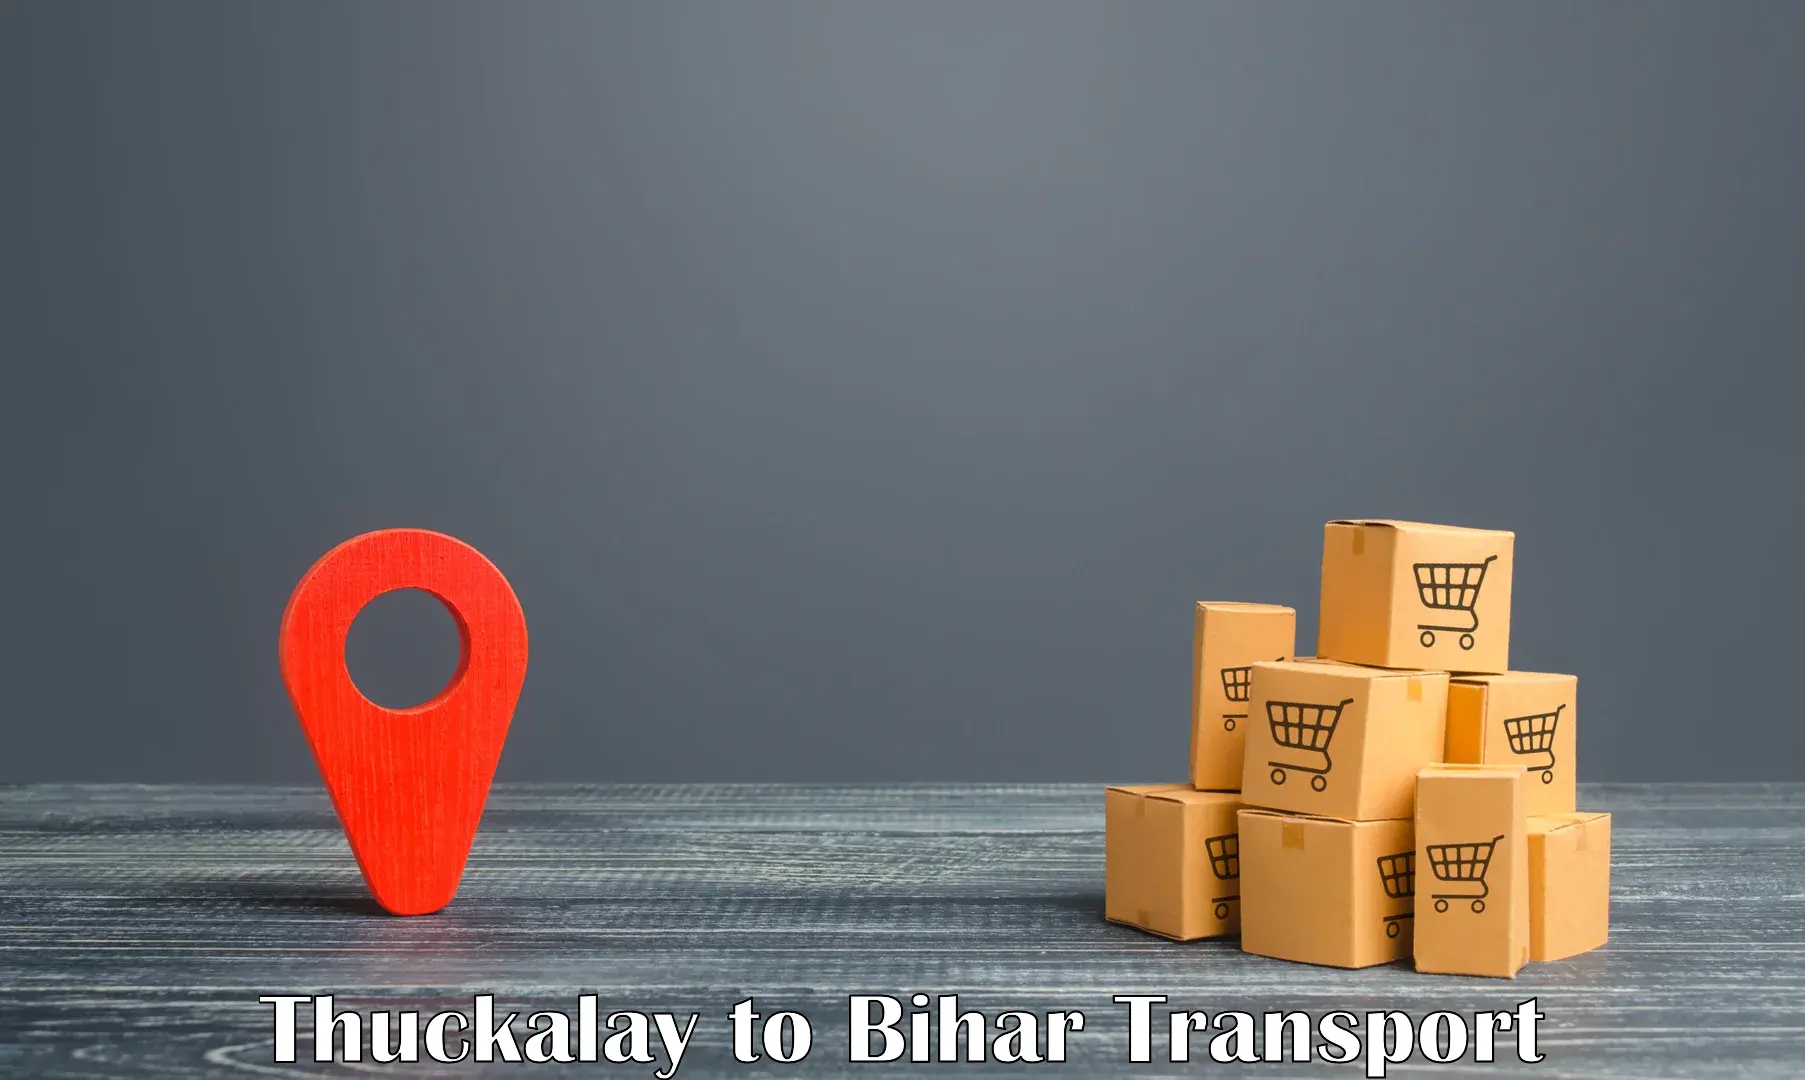 Shipping partner Thuckalay to Patna